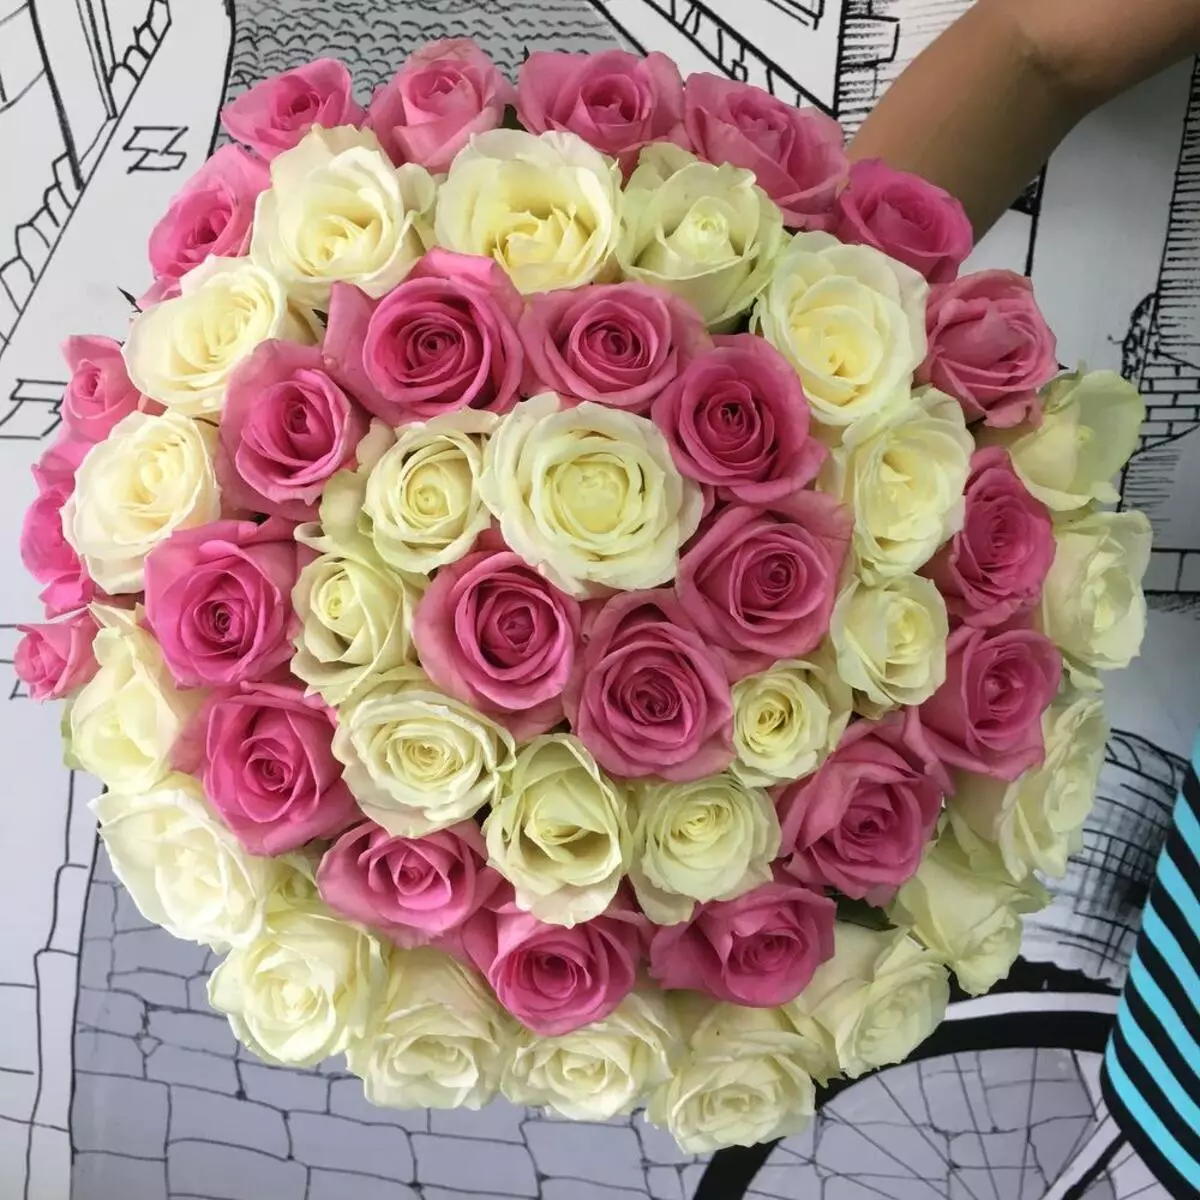 Spiral Bouquet Assembly Technique: En trinnvis krets av en bukett med roser og andre farger for nybegynnere, kompilering av en rund bukett 26646_6